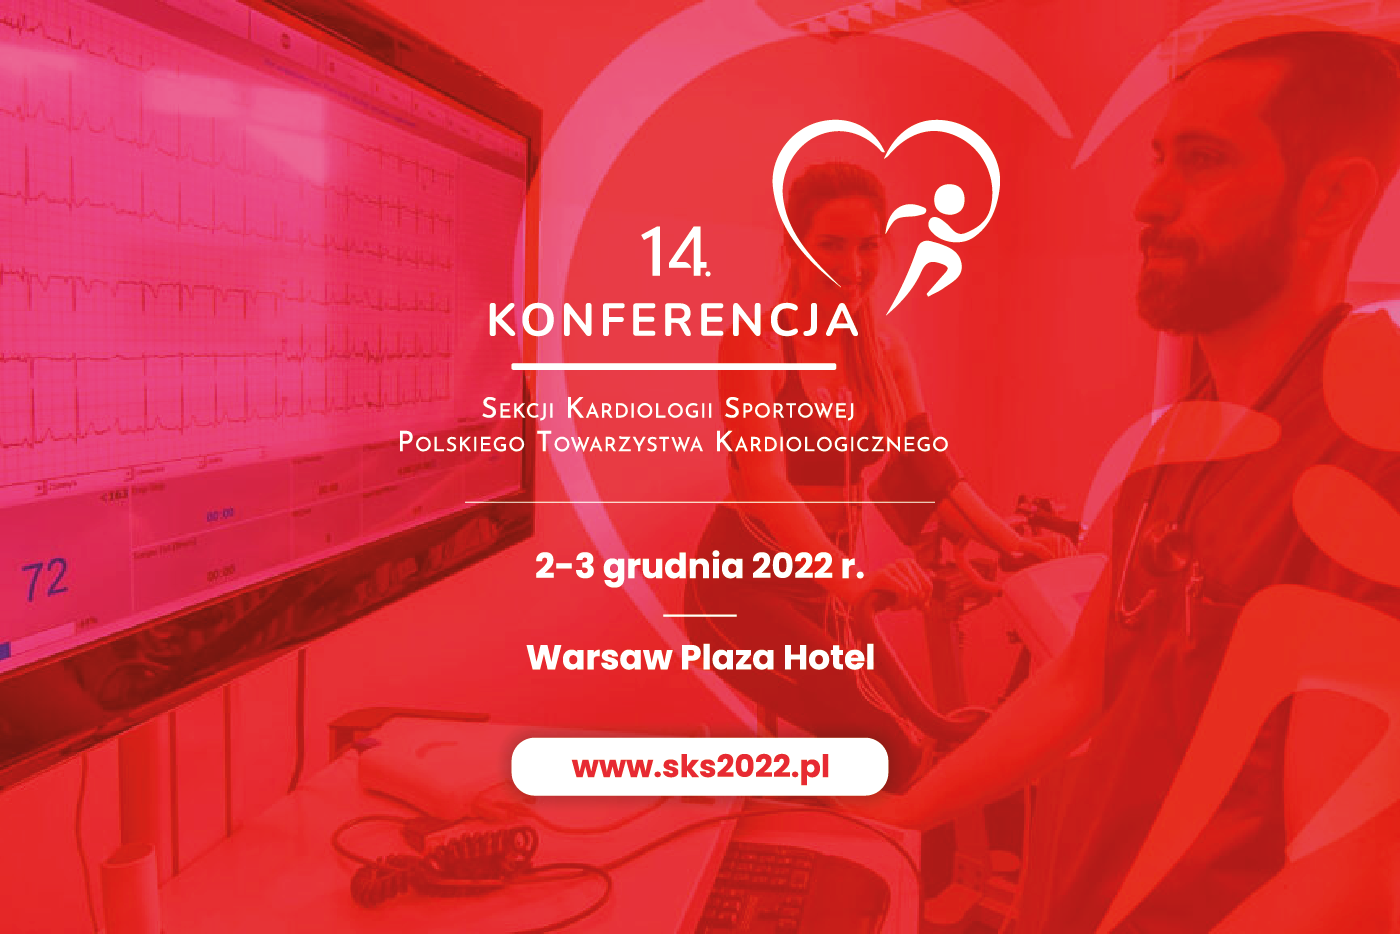 Honorowy Patronat nad 14. Konferencją Sekcji Kardiologii Sportowej Polskiego Towarzystwa Kardiologicznego